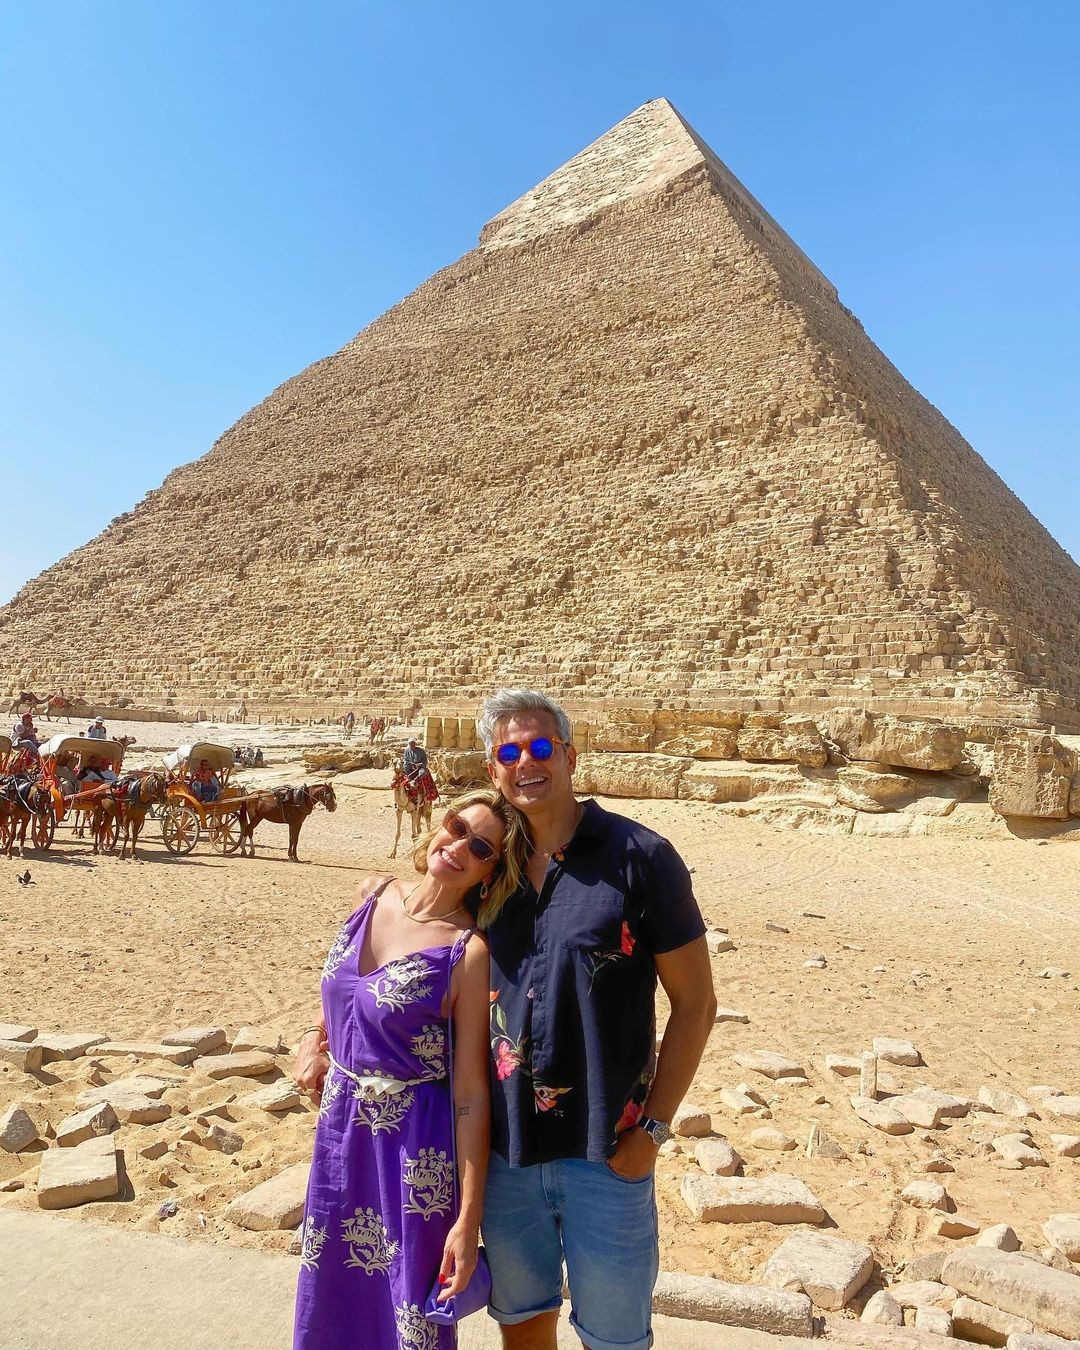 Flávia Alessandra e Otaviano Costa no Egito (Foto: Reprodução/Instagram)